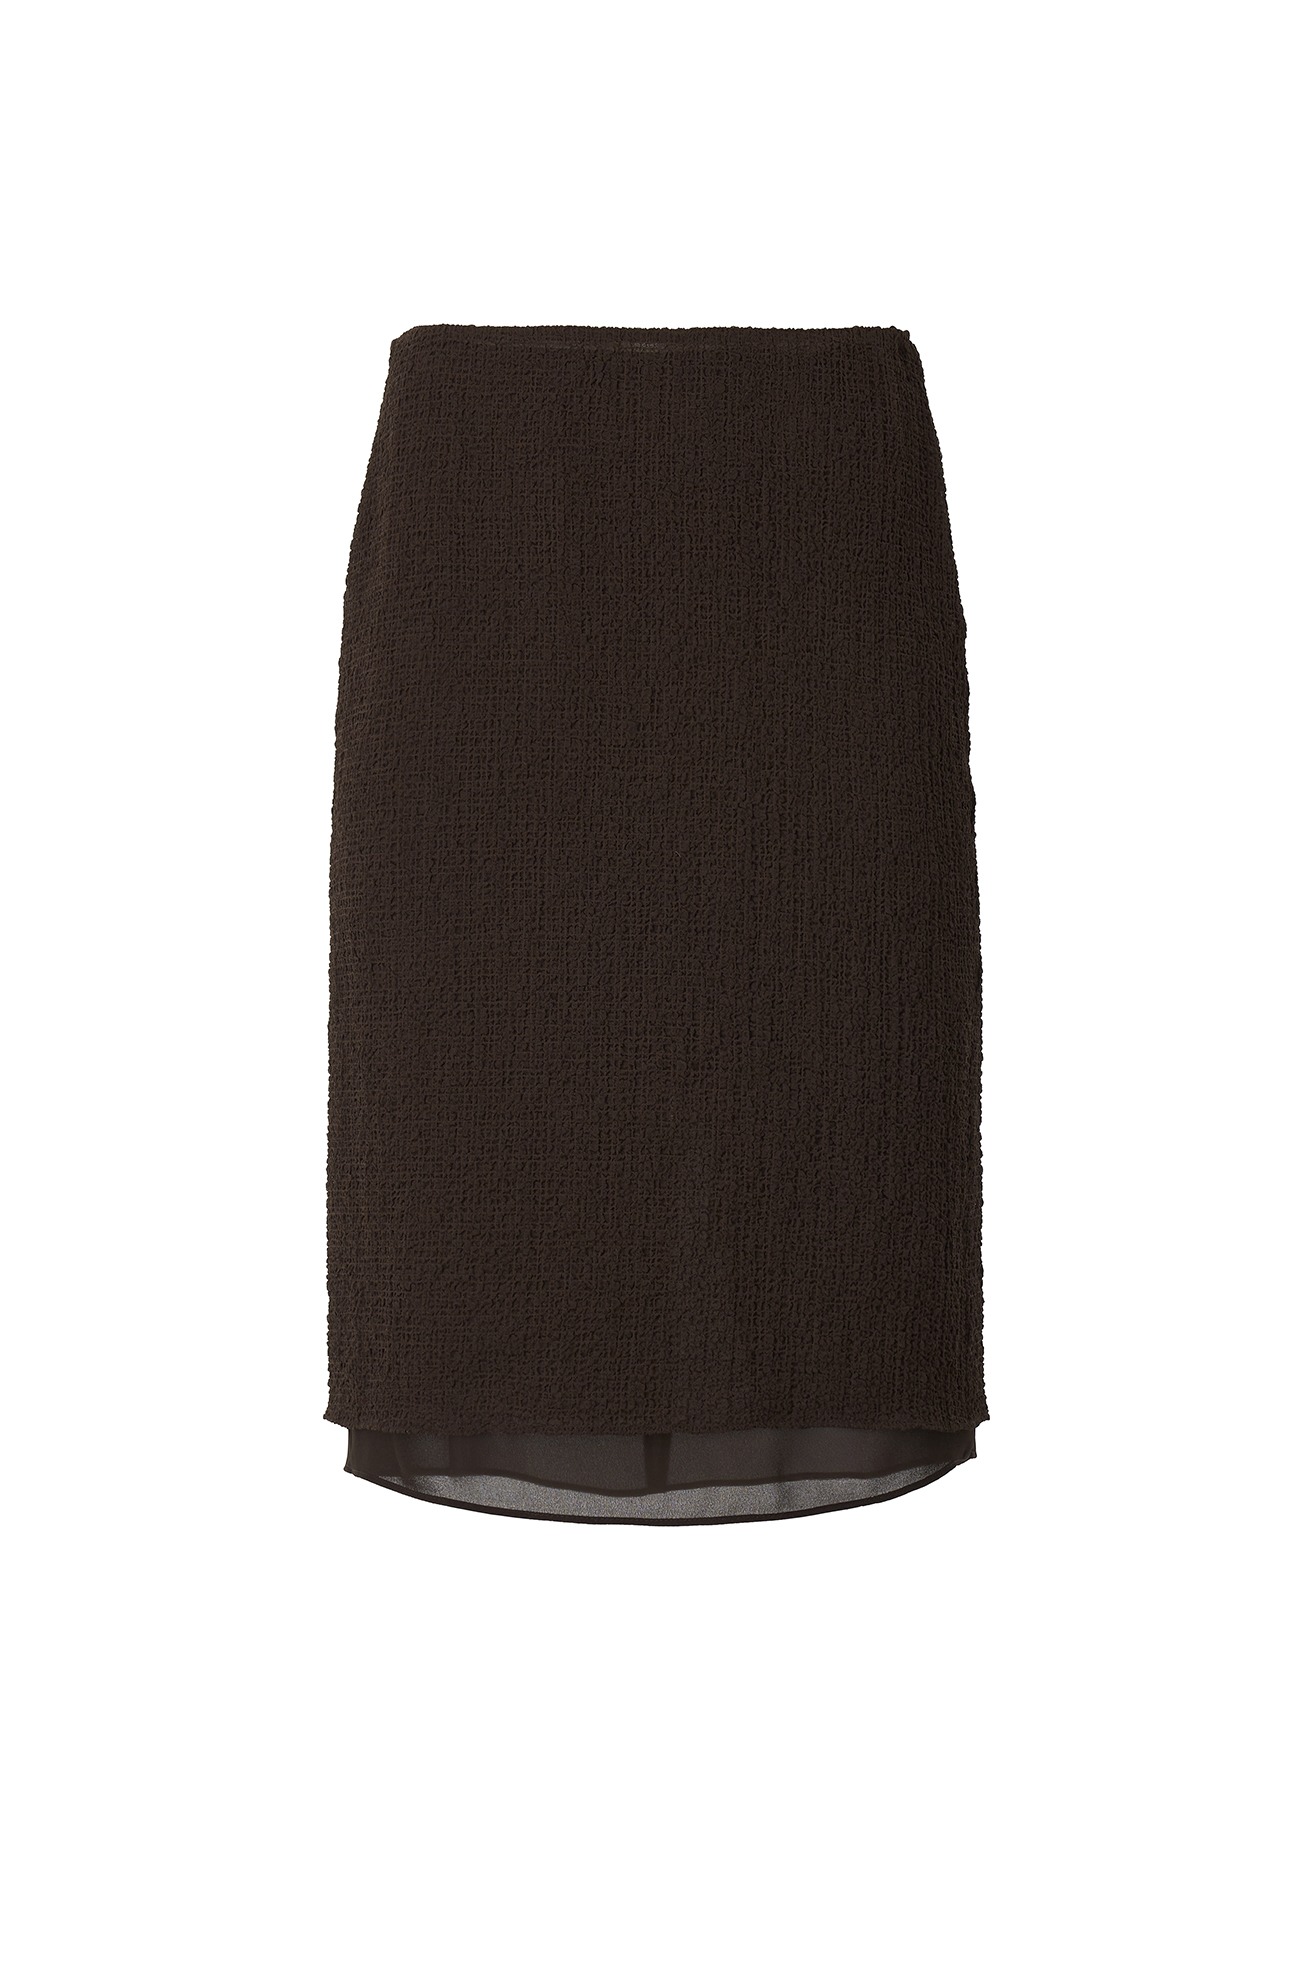 Wrinkle Skirt (Brown)